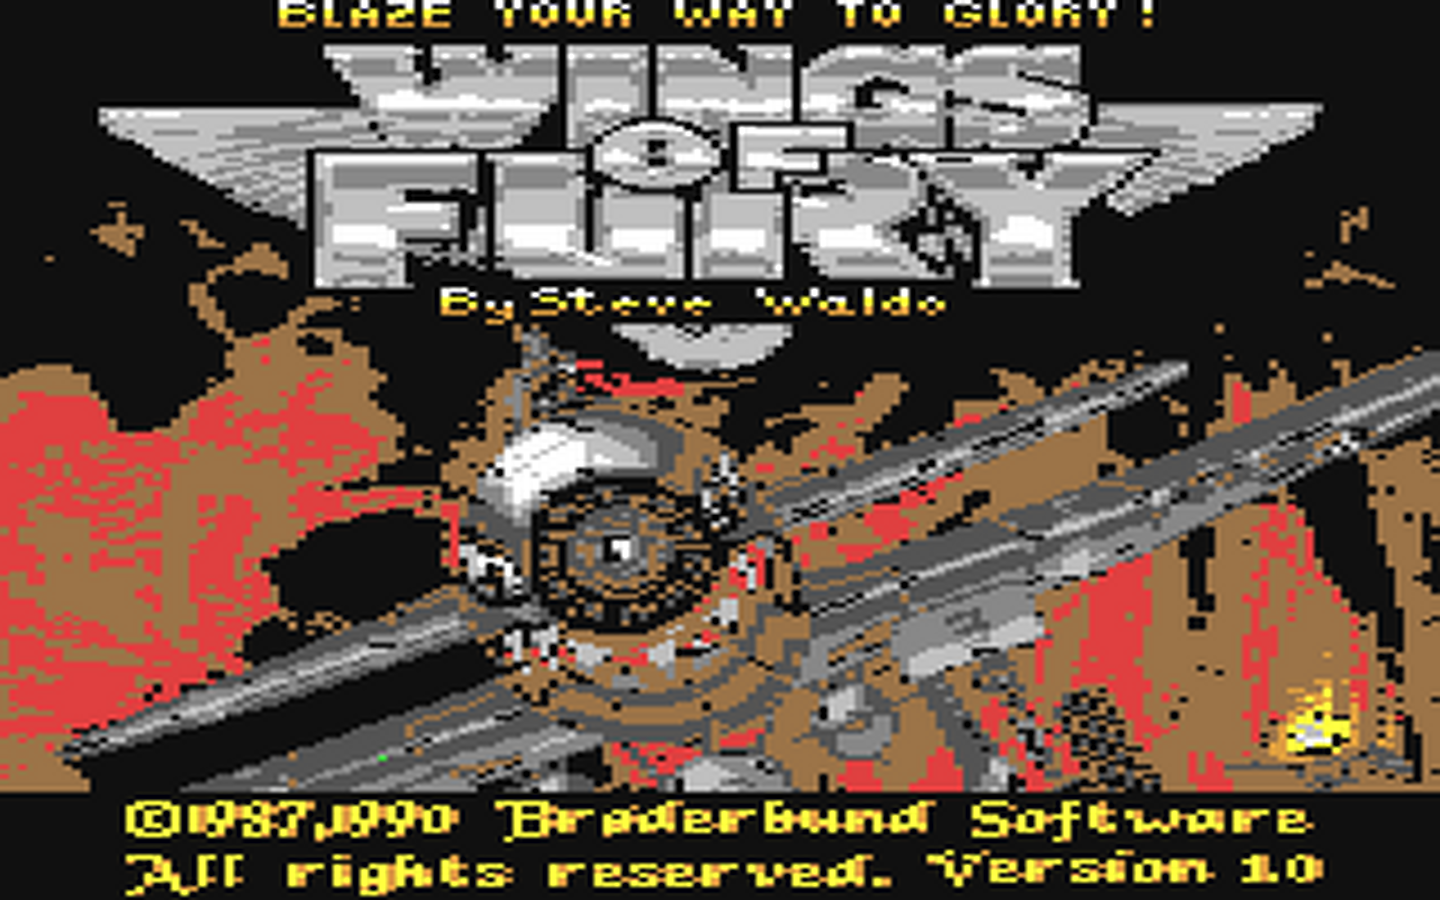 C64 GameBase Wings_of_Fury Broderbund 1990